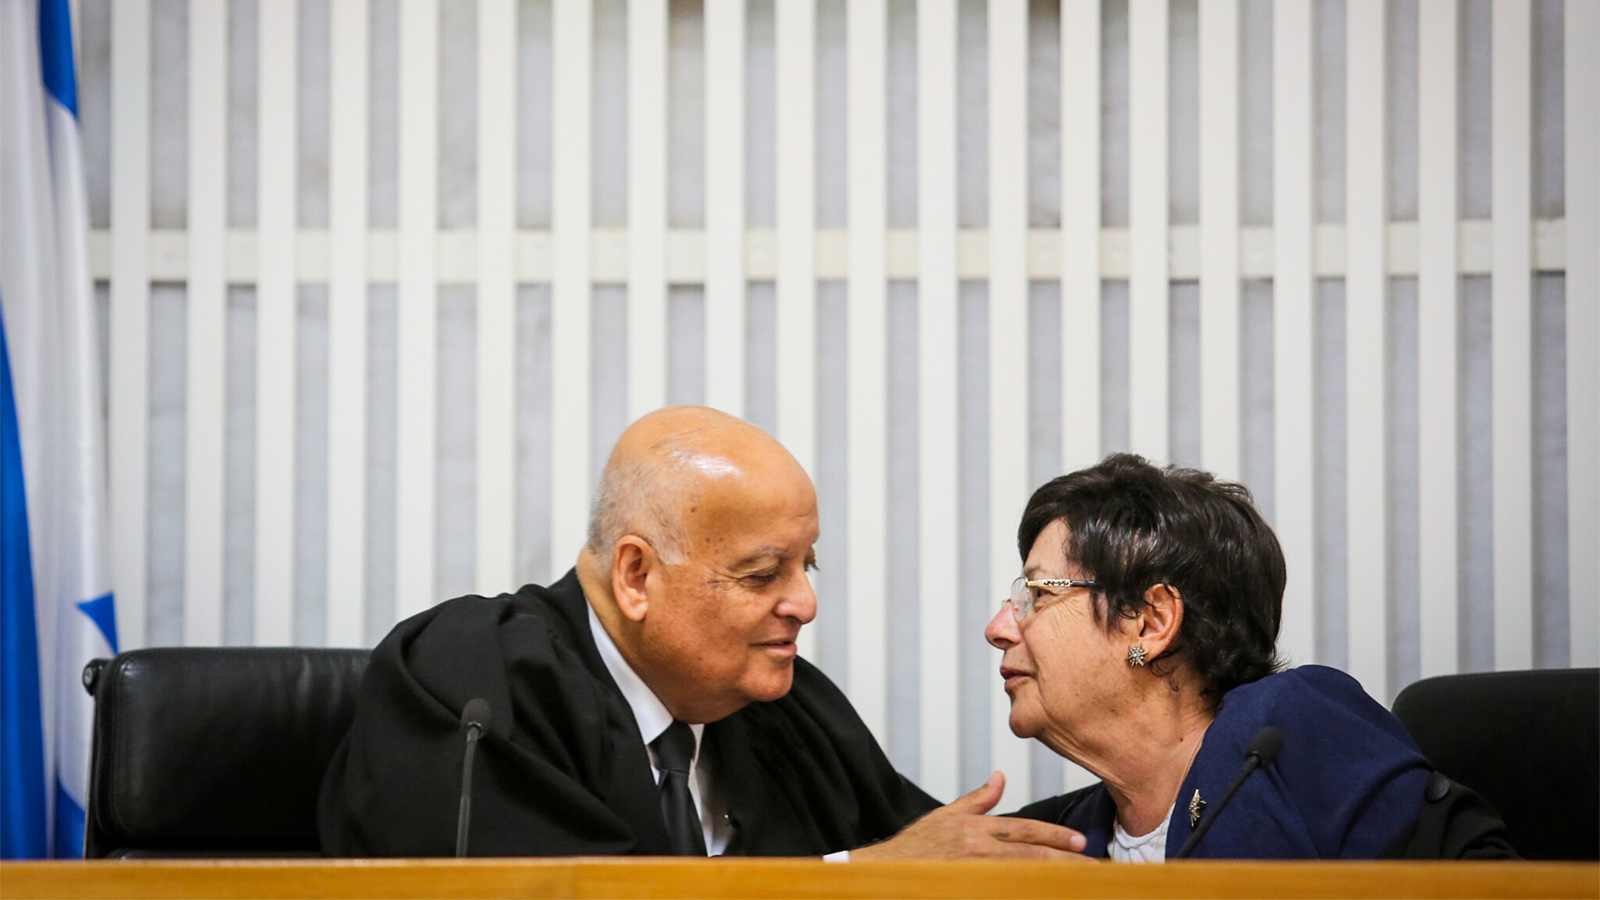 טקס הפרידה משופט העליון ג'ובראן (צילום: נועם מושקוביץ)